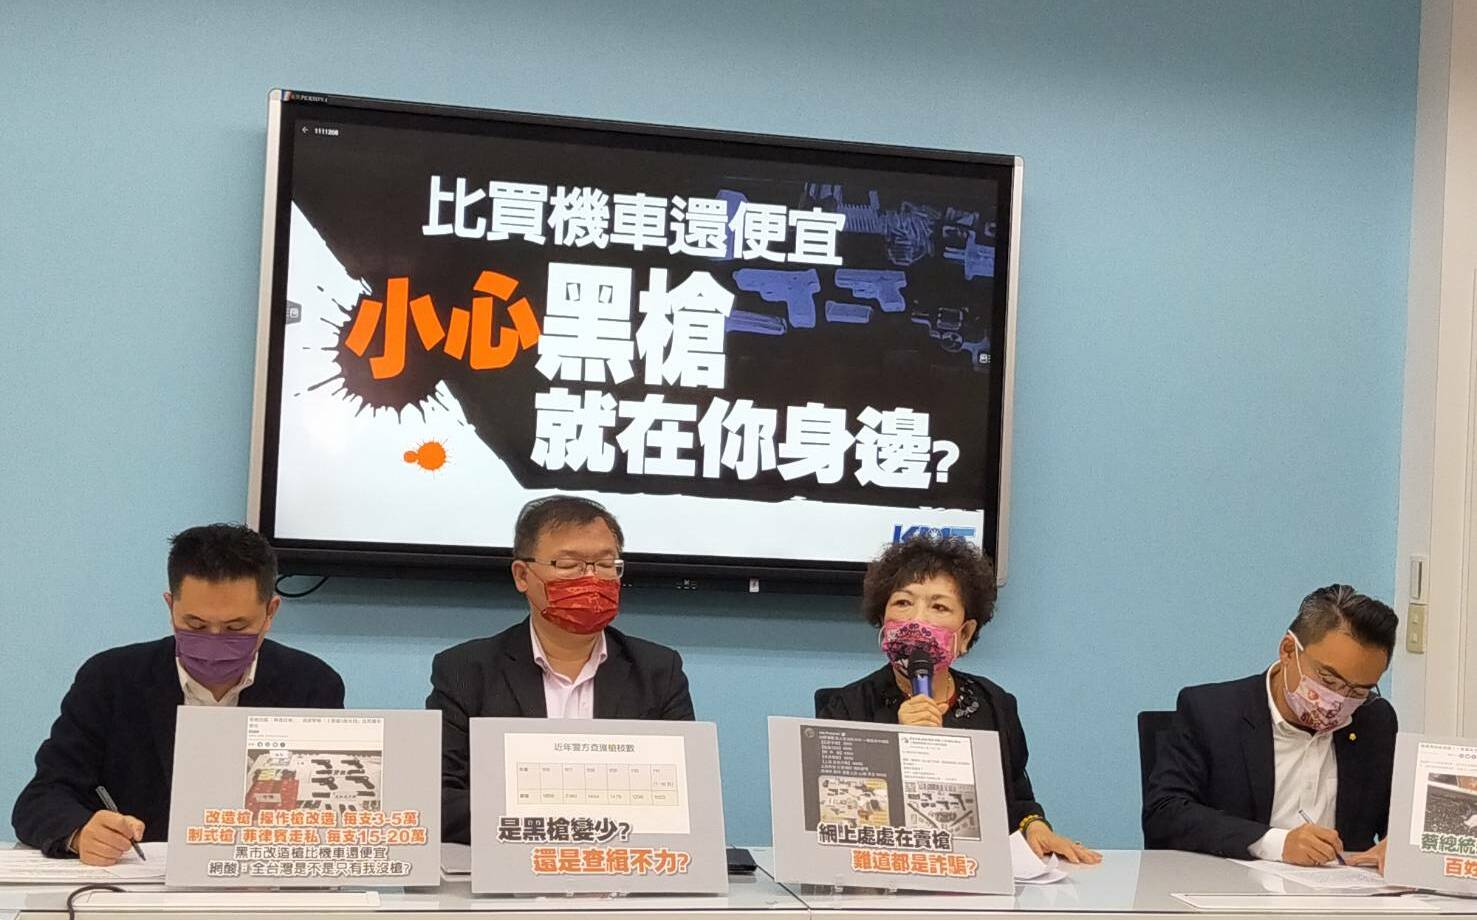 諷台灣變「慶記之國」 藍黨團要求蘇貞昌道歉 | 政治 | Newtalk